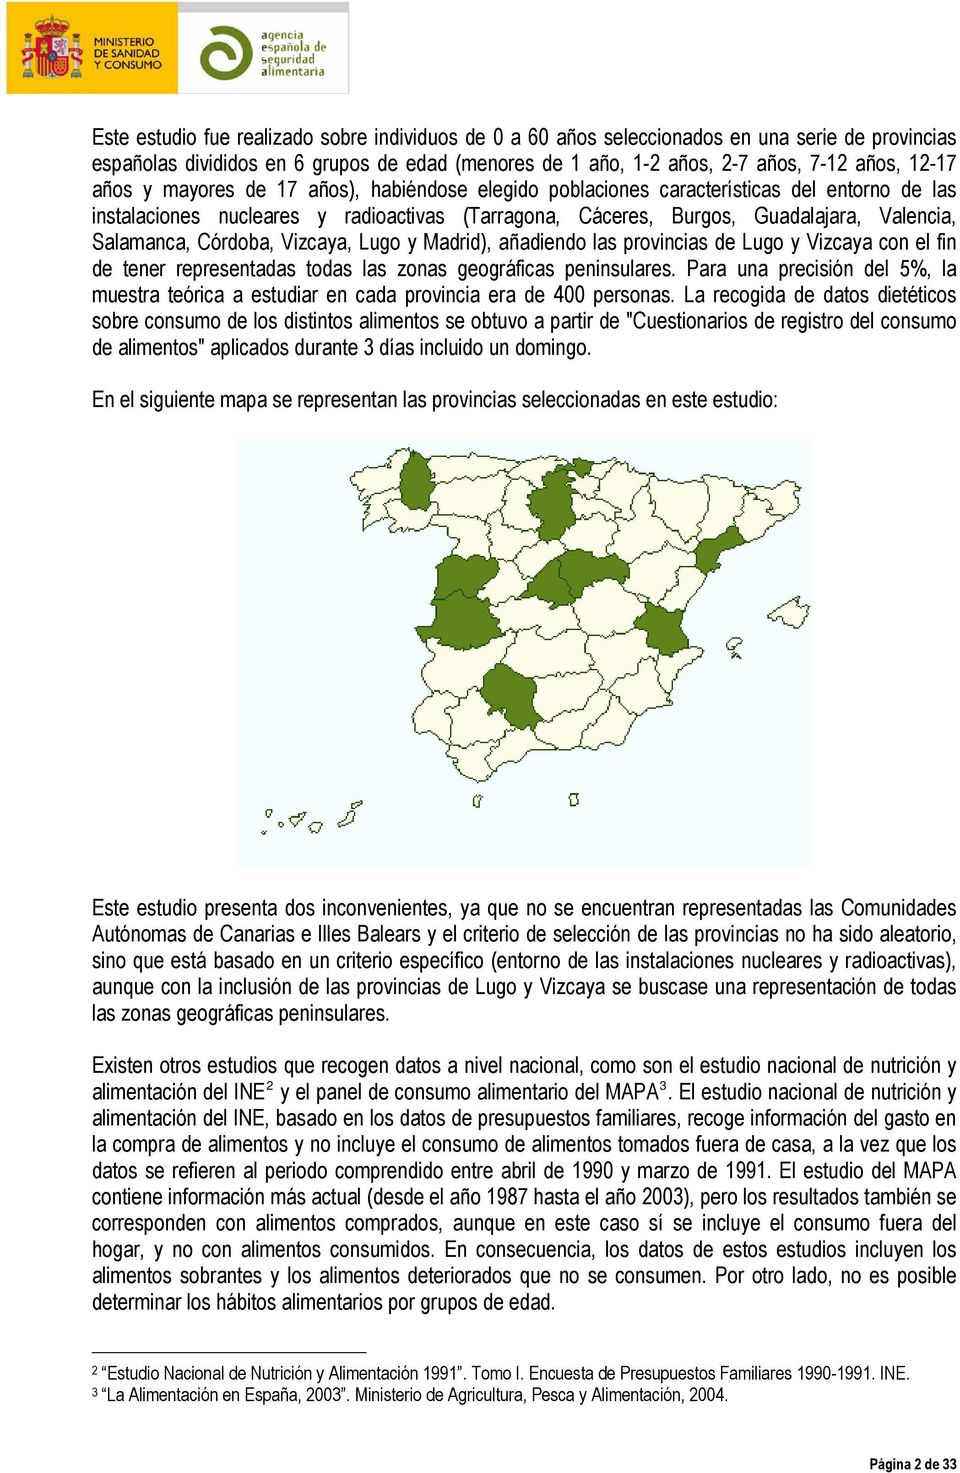 Córdoba, Vizcaya, Lugo y Madrid), añadiendo las provincias de Lugo y Vizcaya con el fin de tener representadas todas las zonas geográficas peninsulares.